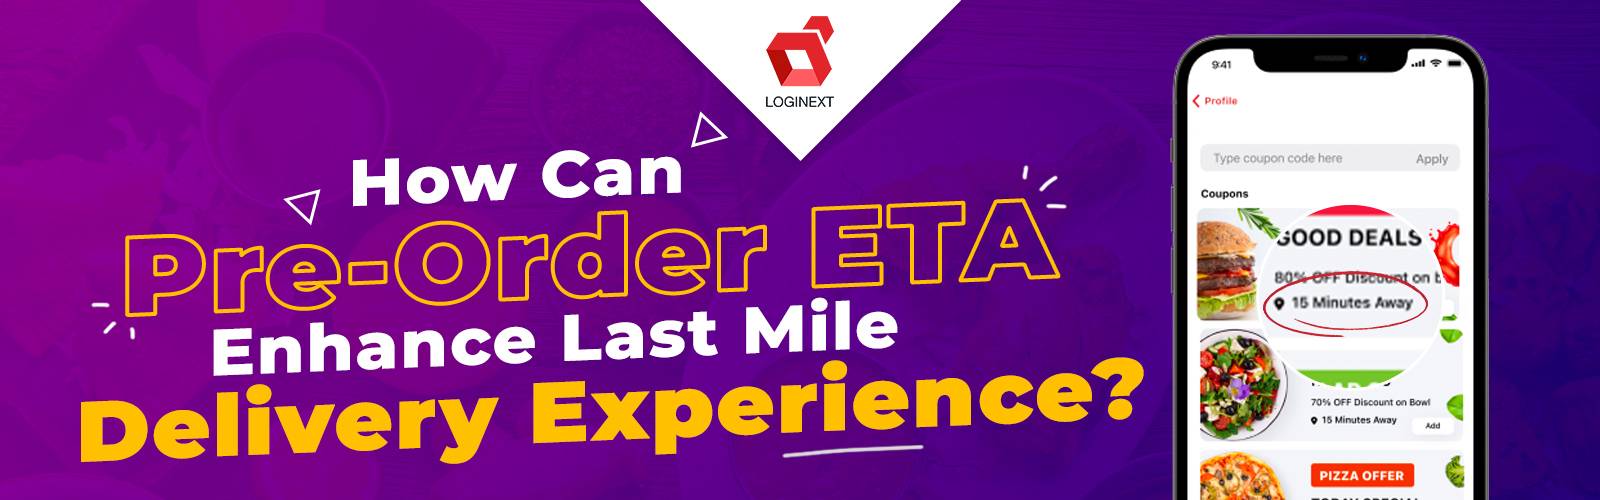 Qu'est-ce que l'ETA de précommande ? Comment peut-il améliorer l’expérience de livraison du dernier kilomètre ?